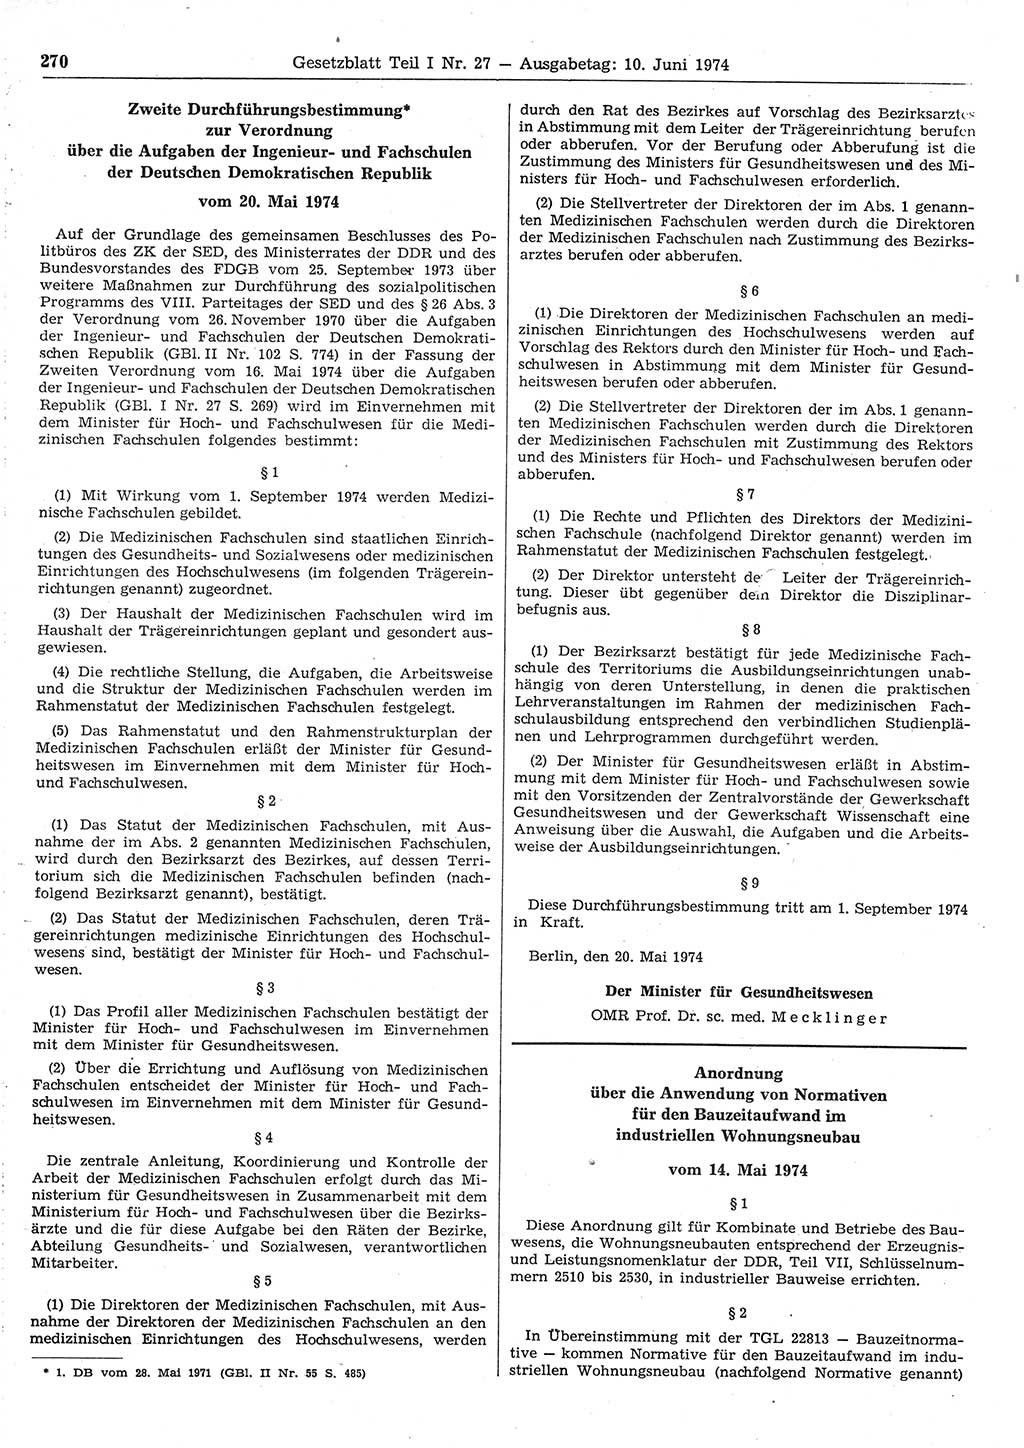 Gesetzblatt (GBl.) der Deutschen Demokratischen Republik (DDR) Teil Ⅰ 1974, Seite 270 (GBl. DDR Ⅰ 1974, S. 270)